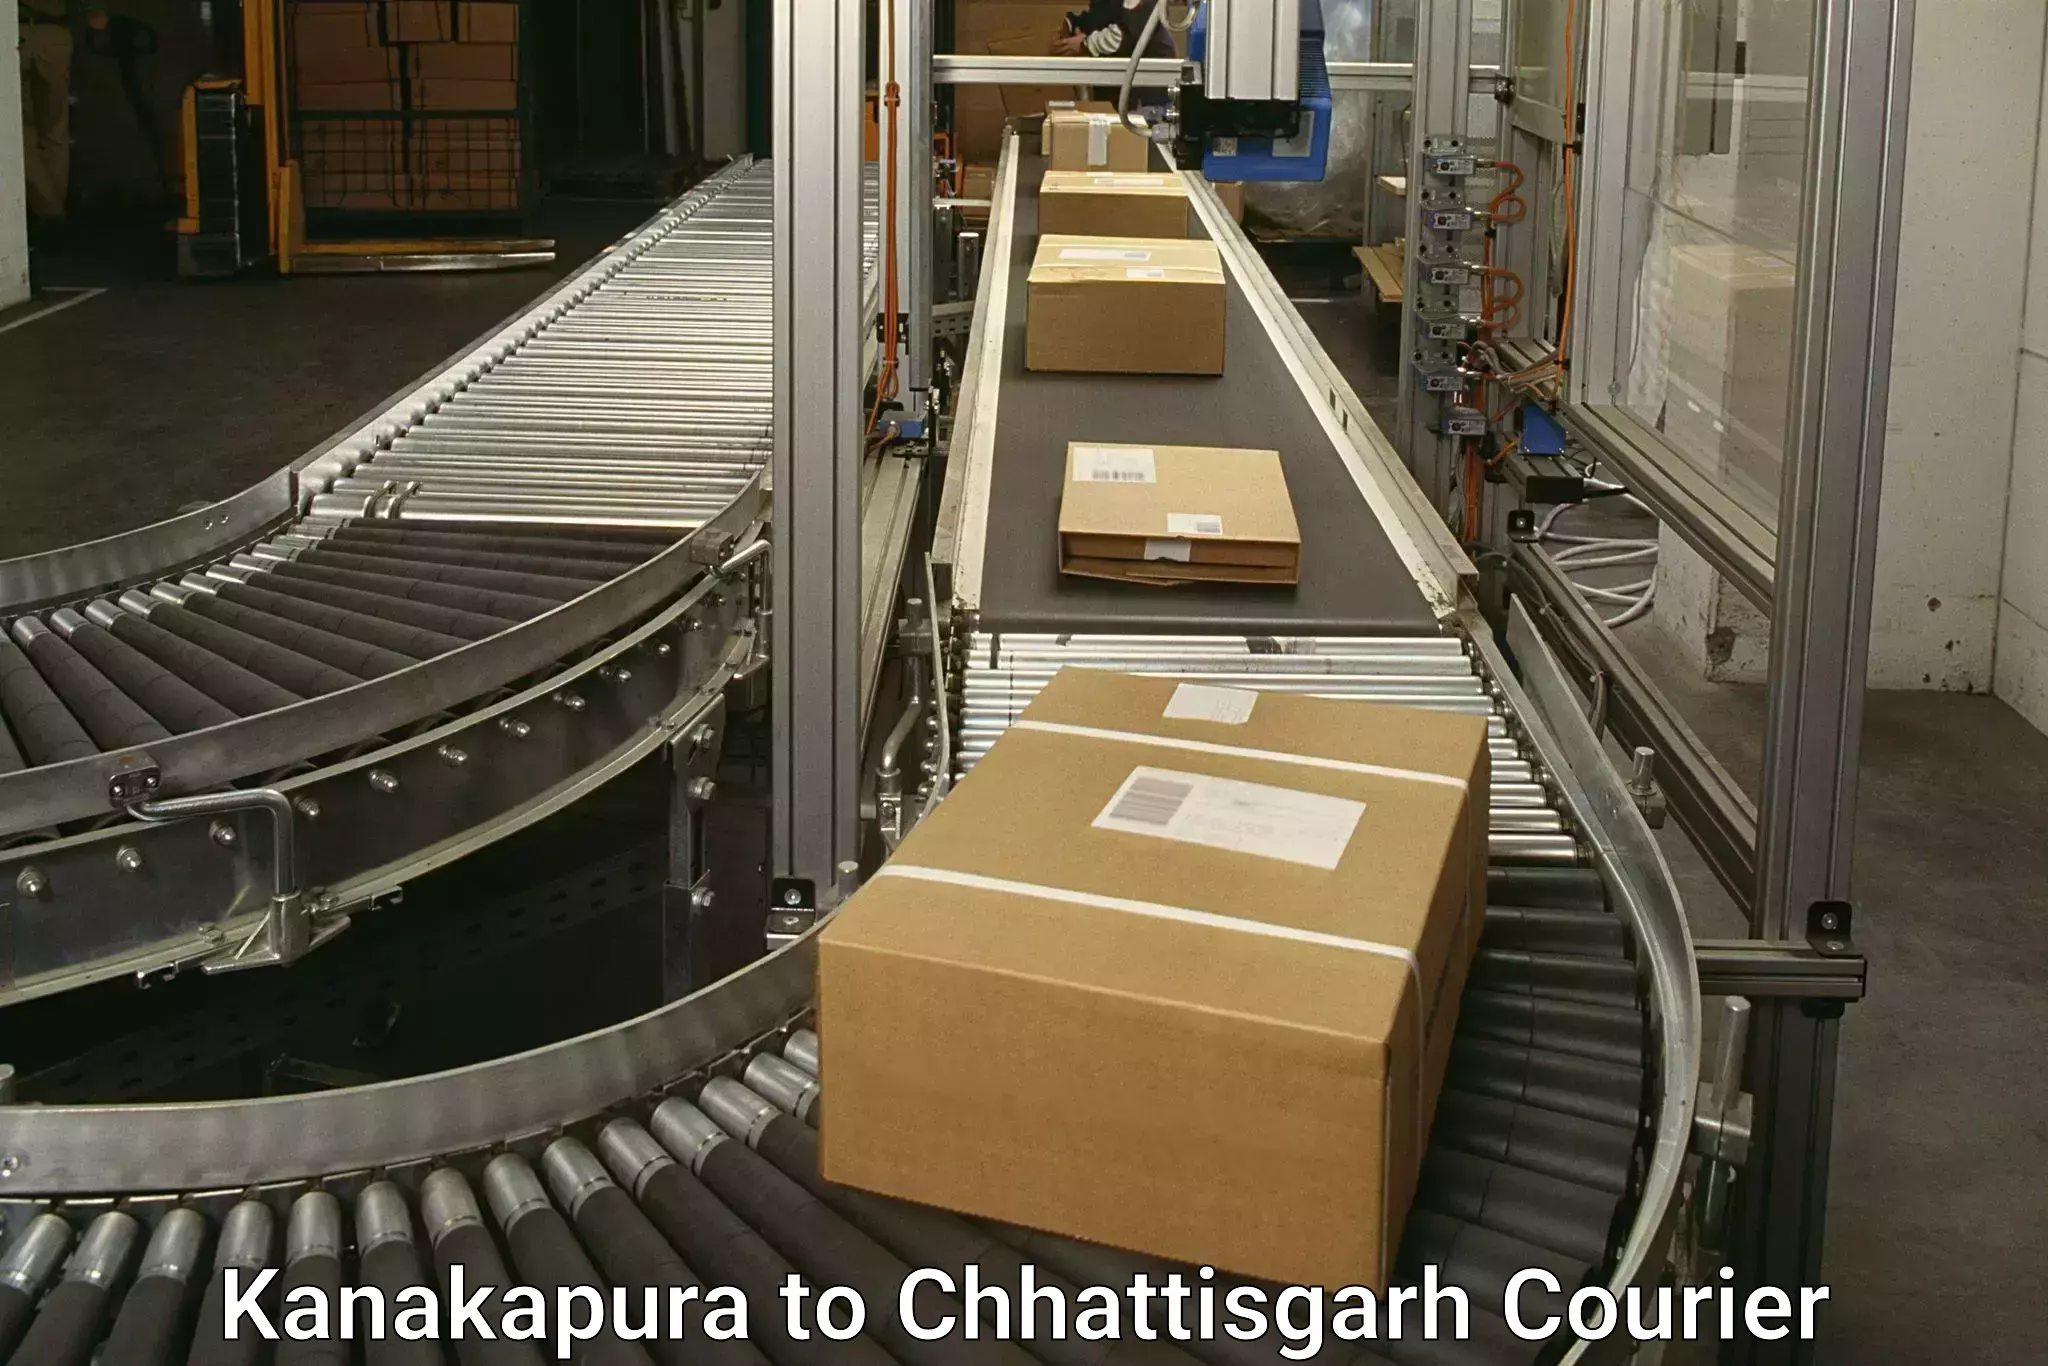 Express delivery solutions Kanakapura to Nagri